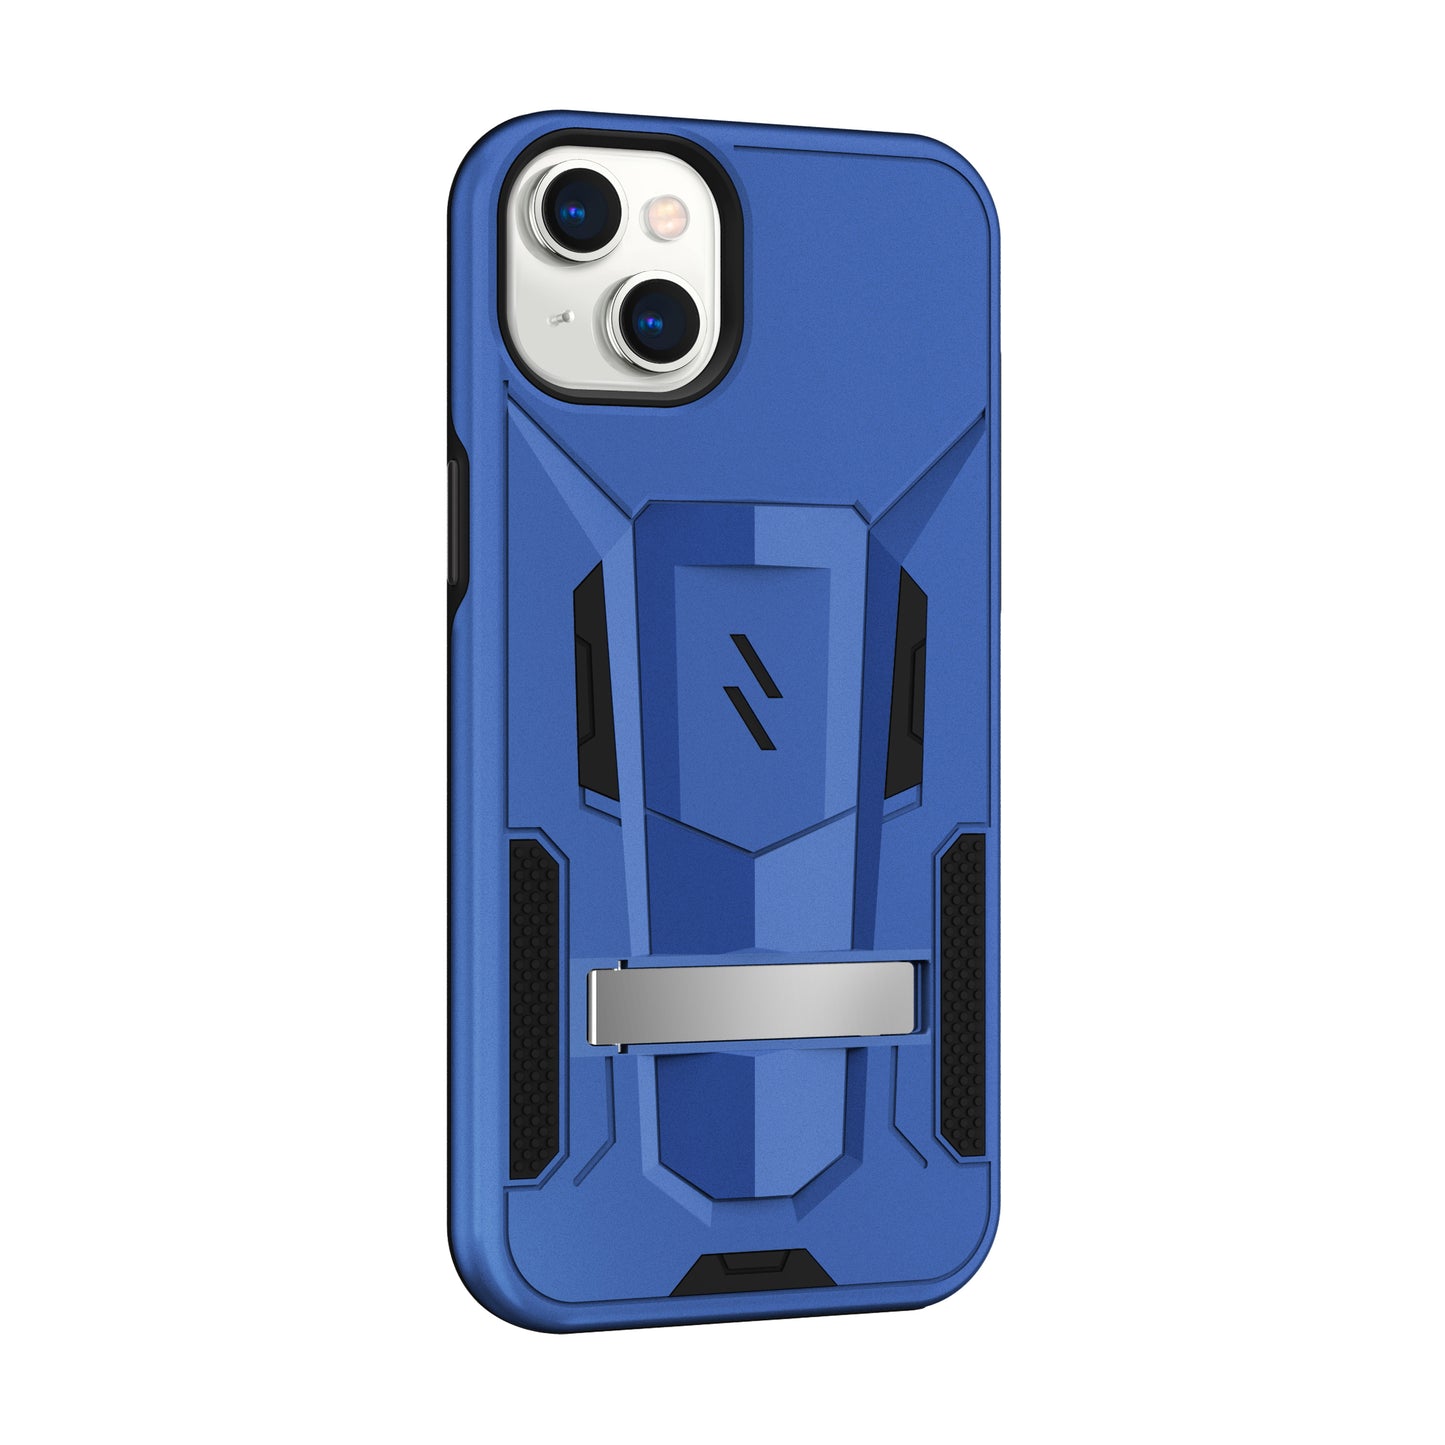 ZIZO TRANSFORM Series iPhone 14 Plus (6.7) Case - Blue